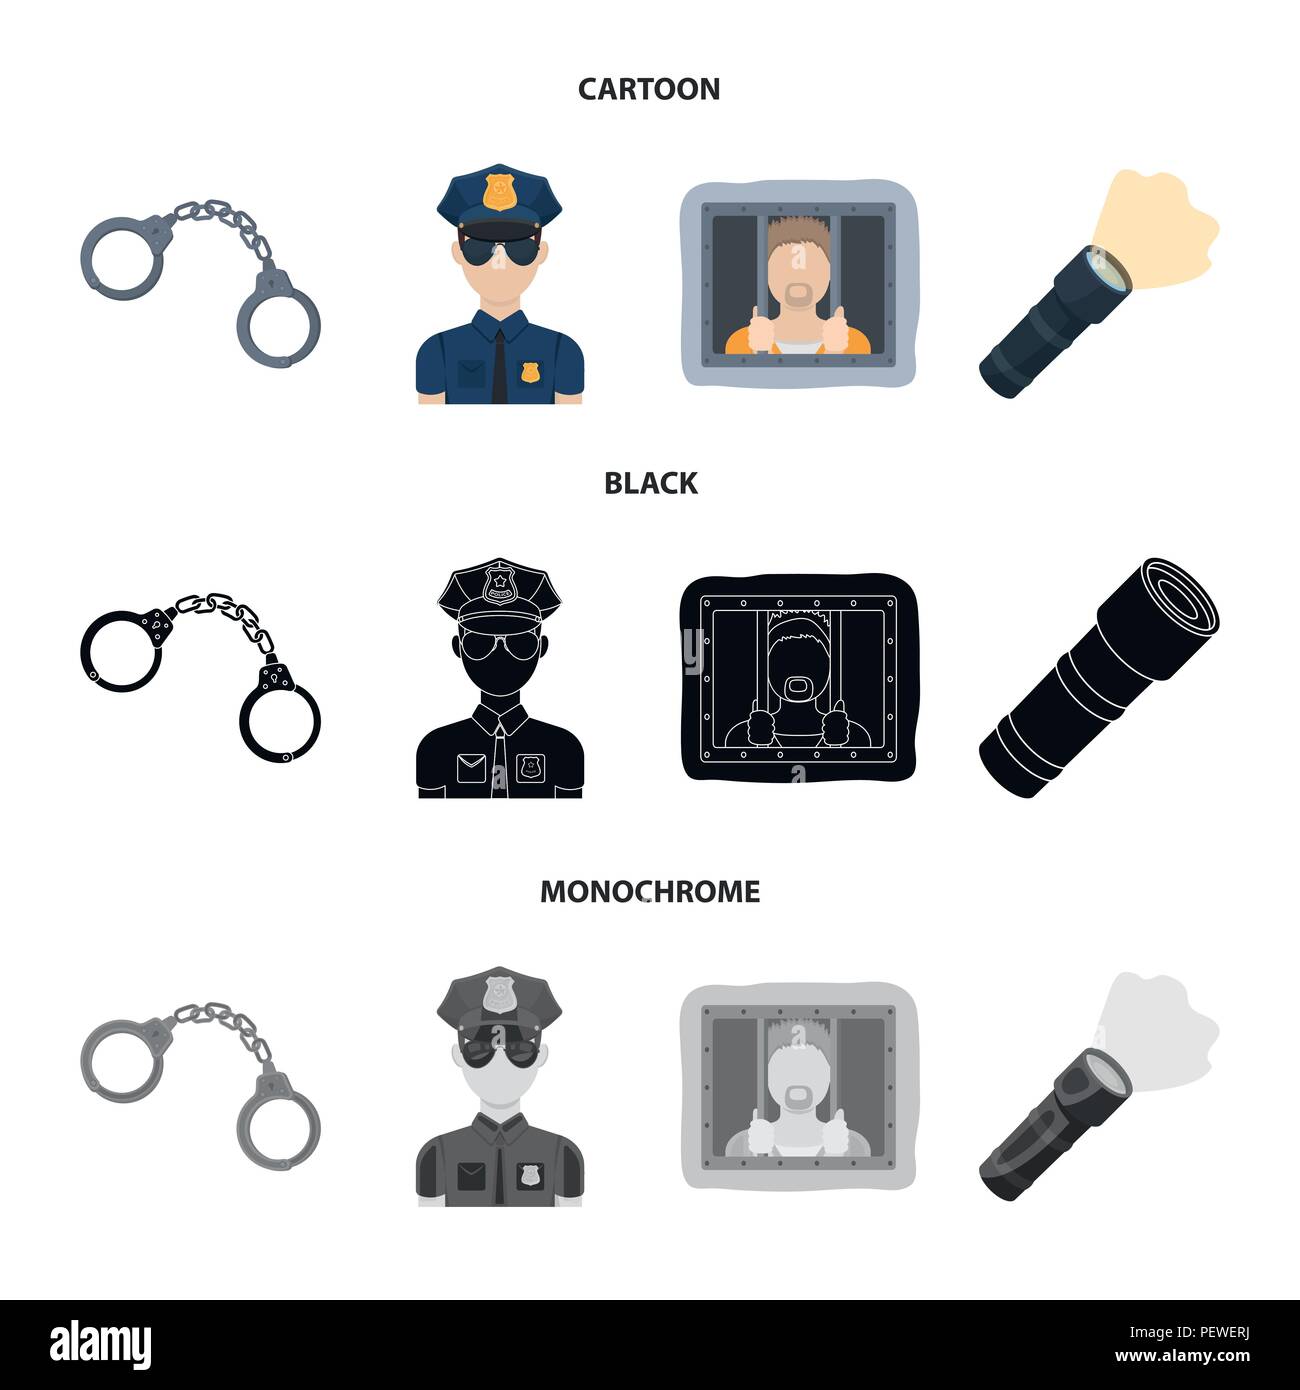 Handschellen, Polizist, Gefangener, Taschenlampe. Polizei Sammlung Icons im  Cartoon, schwarz, Schwarzweiß-Stil vektor Symbol lieferbar Abbildung  Stock-Vektorgrafik - Alamy